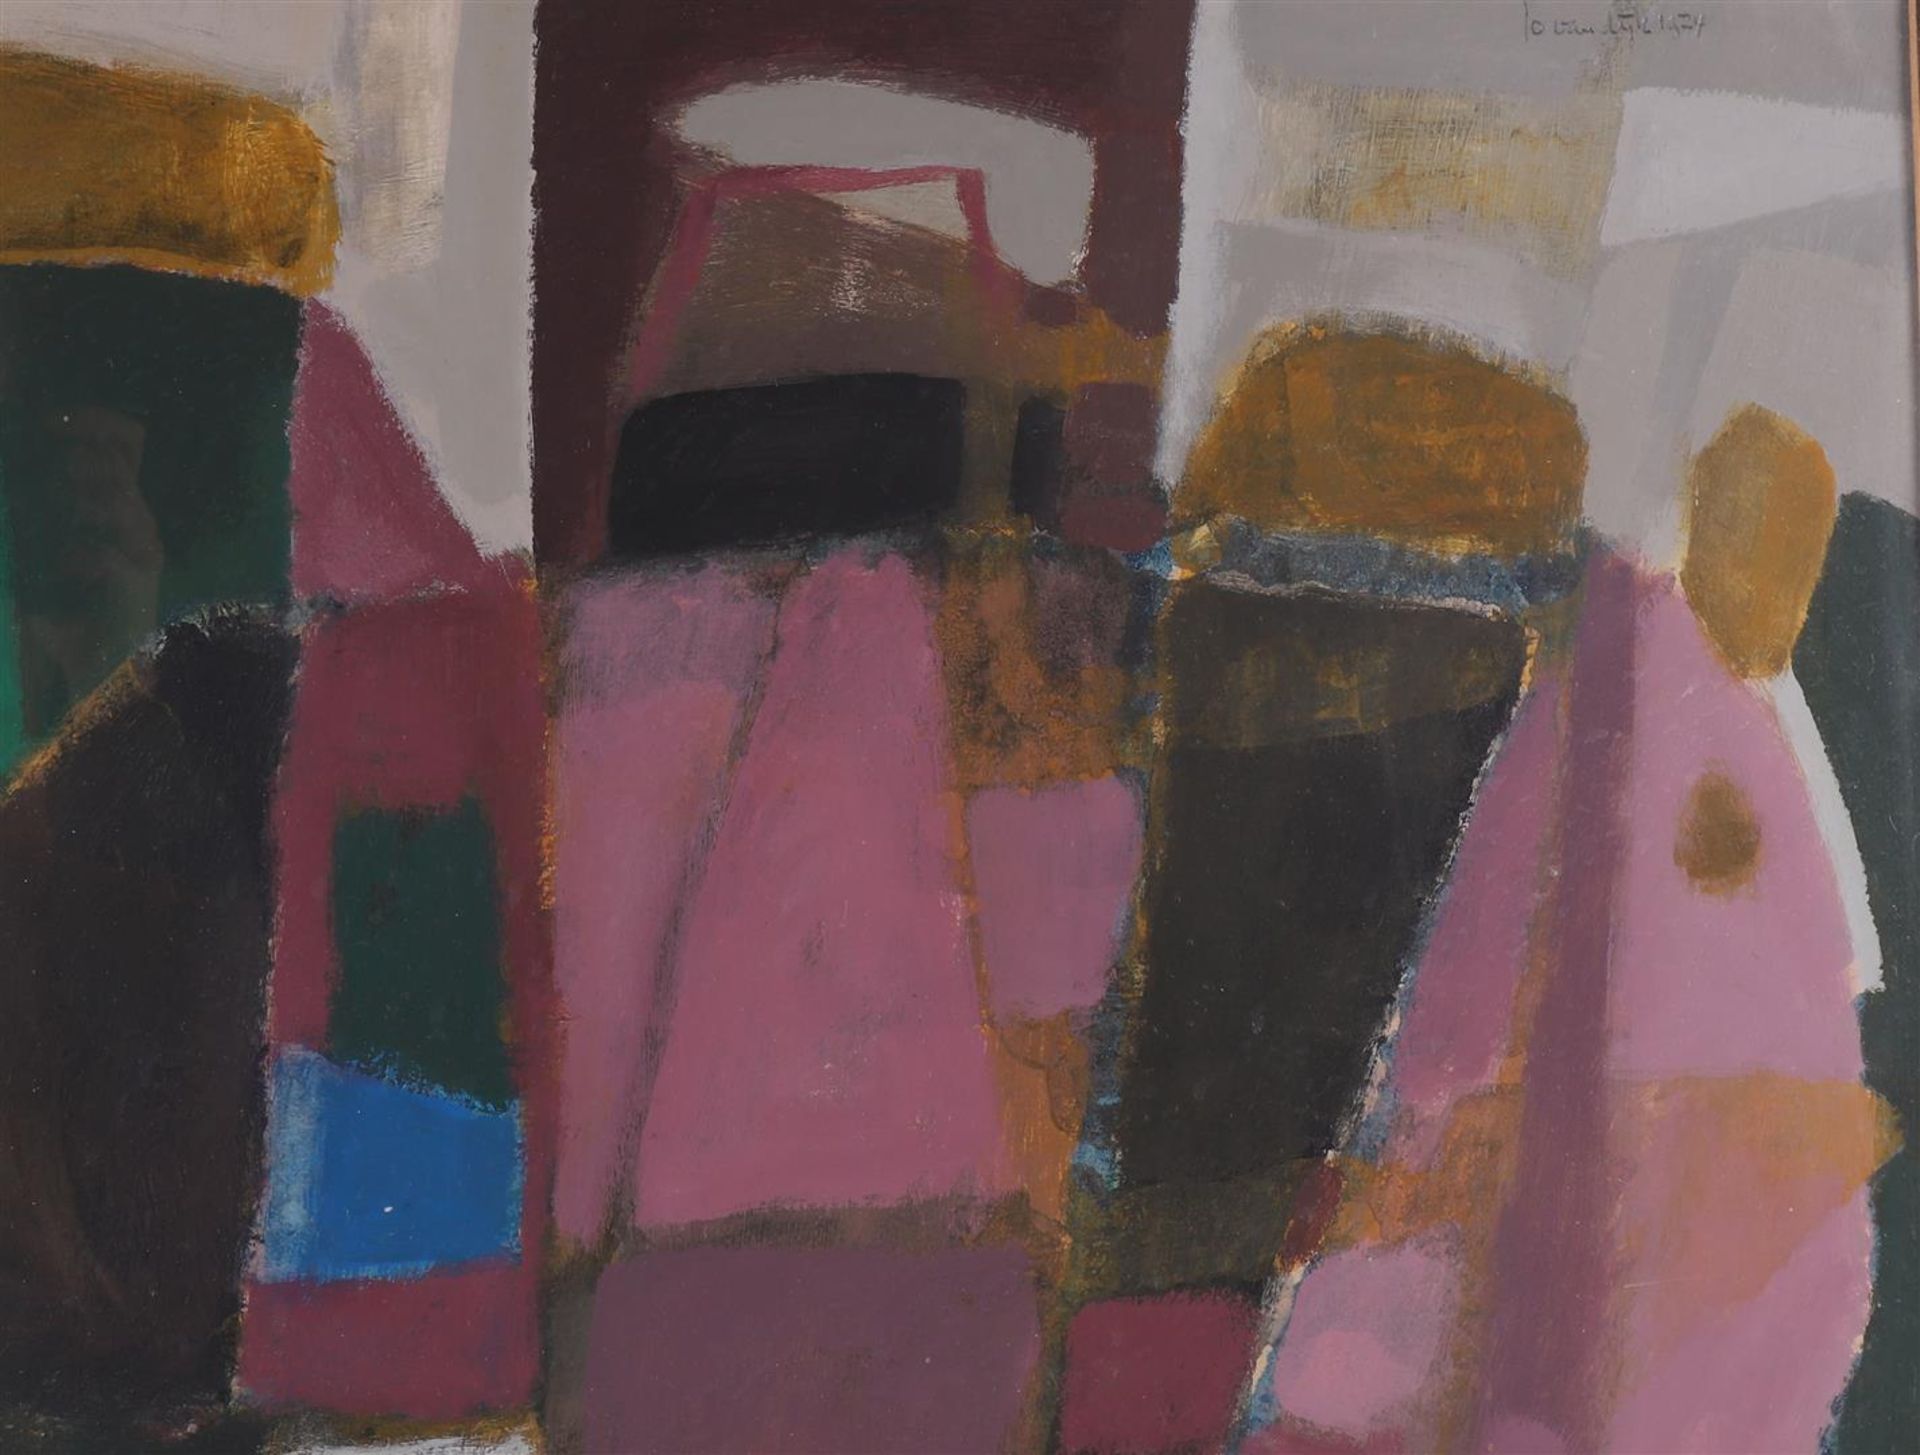 Dijk, van Jo (1931-1999) “Composition”, 1974. - Image 4 of 6